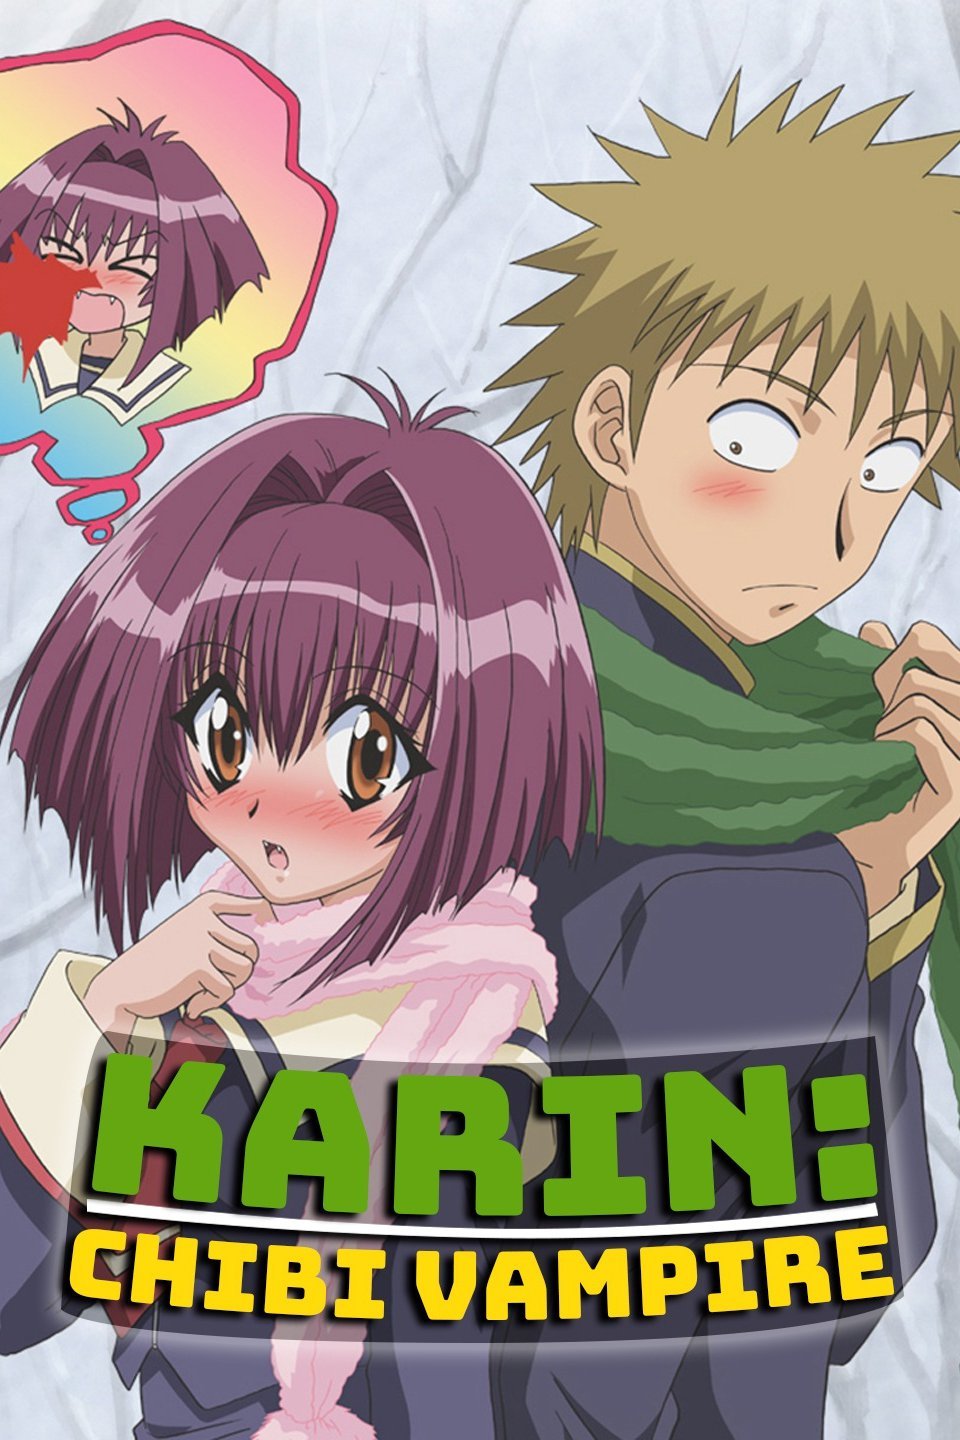 Maaka Karin  Wiki  Anime Amino